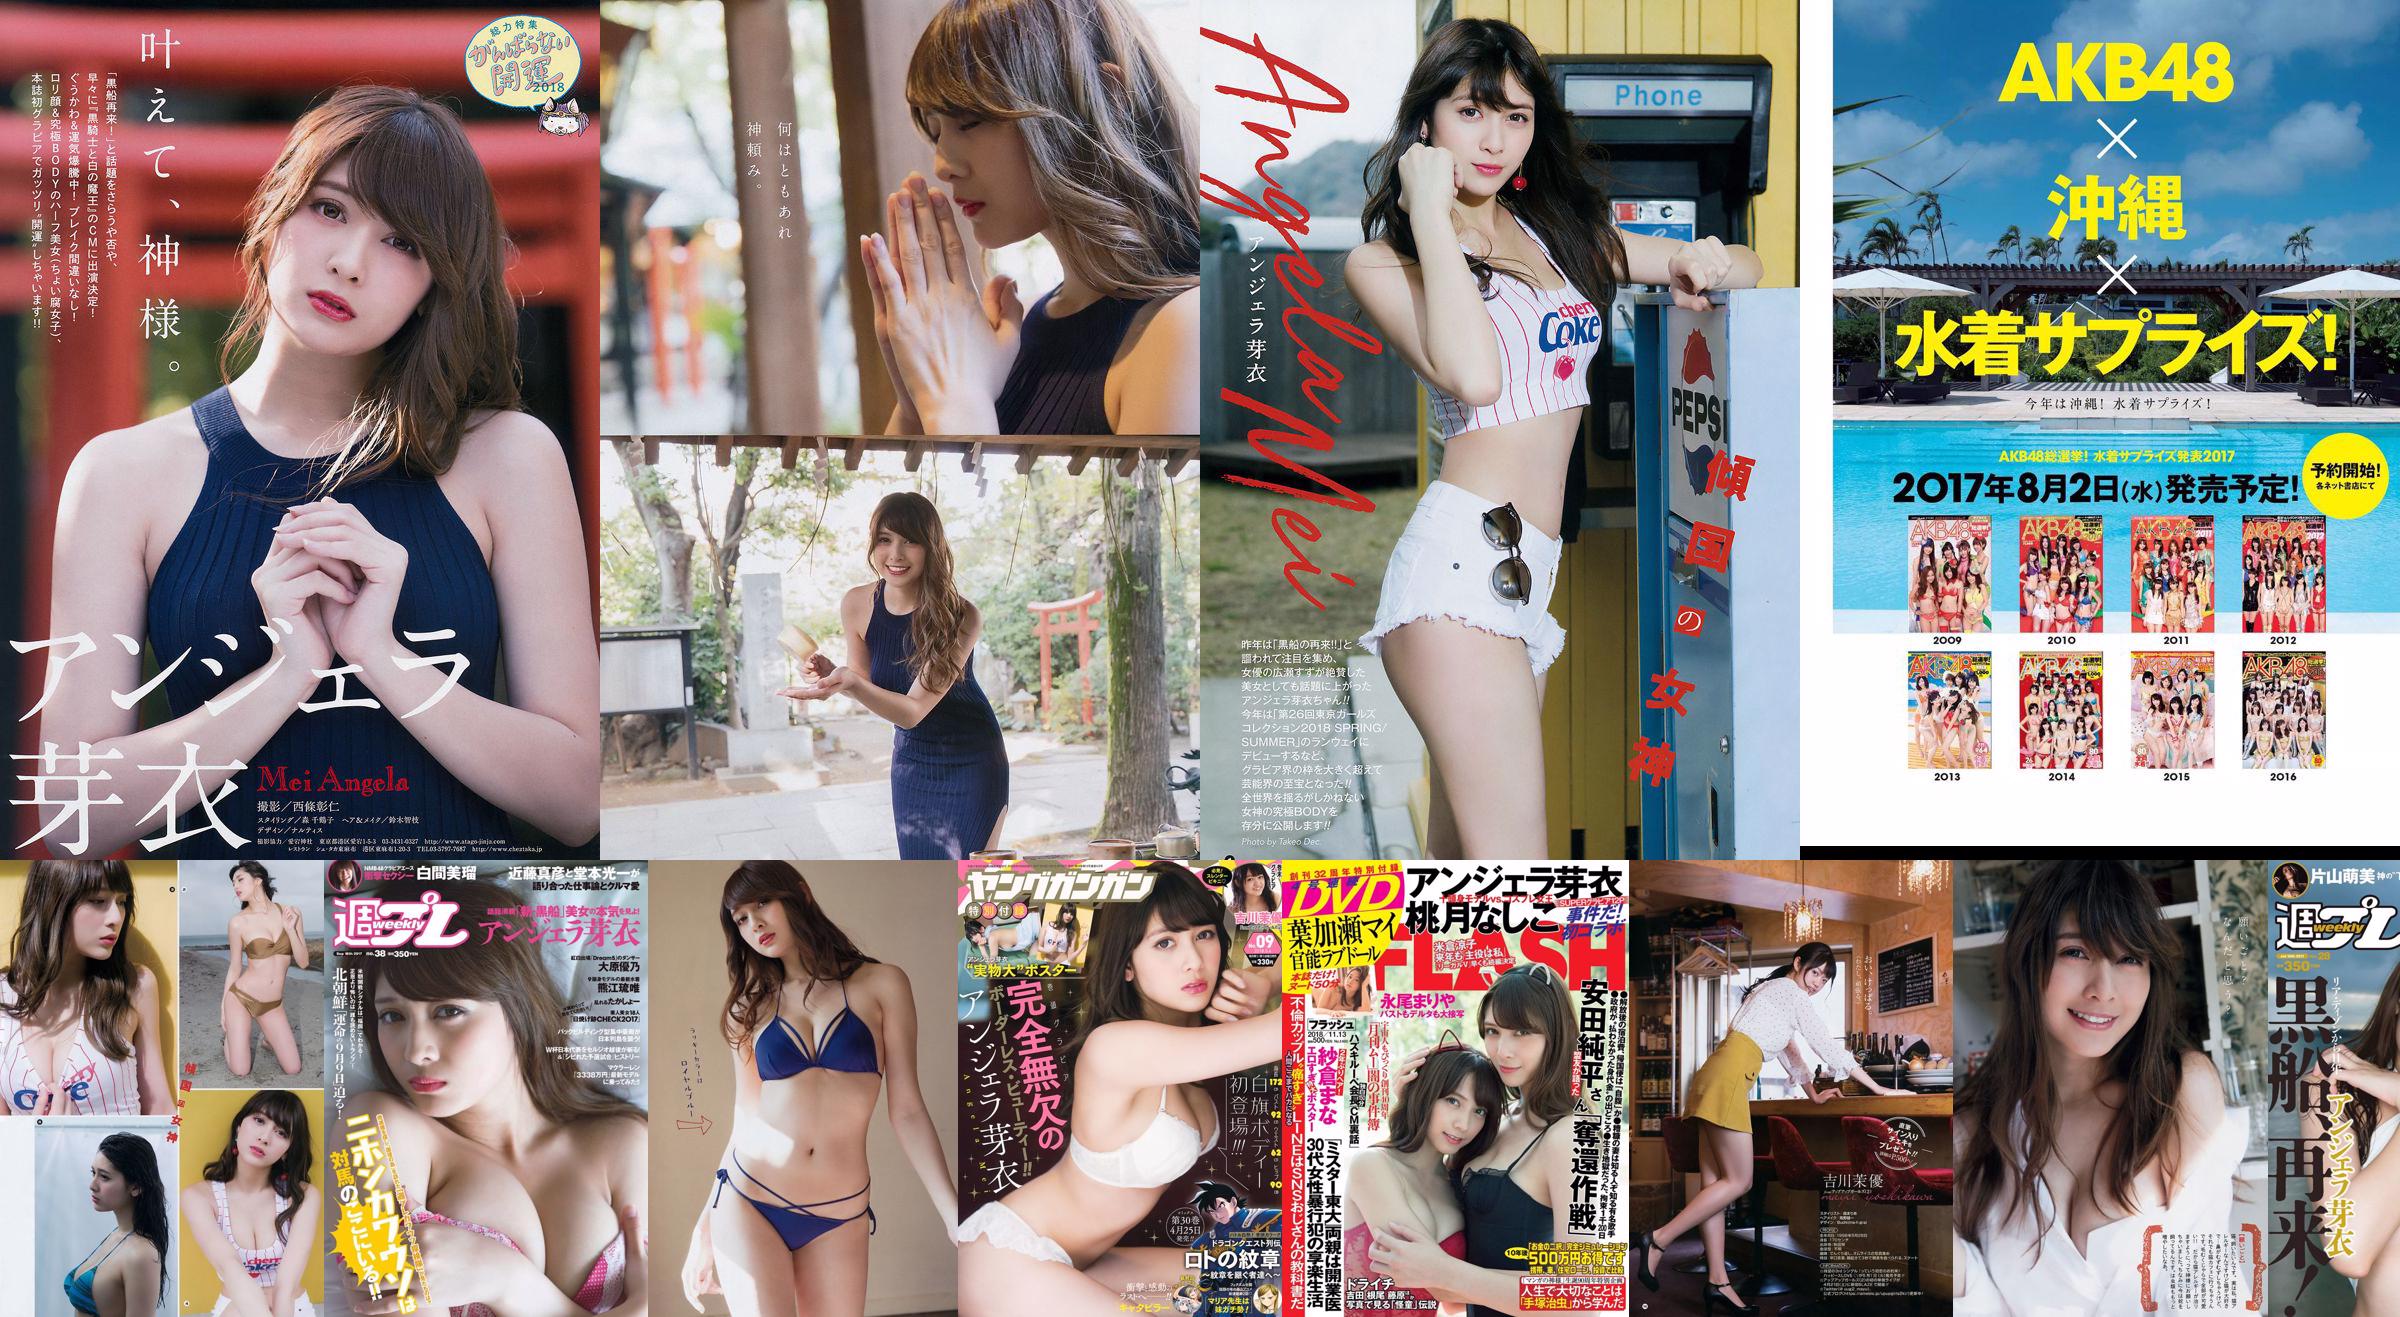 Angela Mei Riho Abiru Yuuna Suzuki Yuno Ohara Moemi Katayama Ito Ohno [Weekly Playboy] 2017 No.28 Photographie No.e63caa Page 13